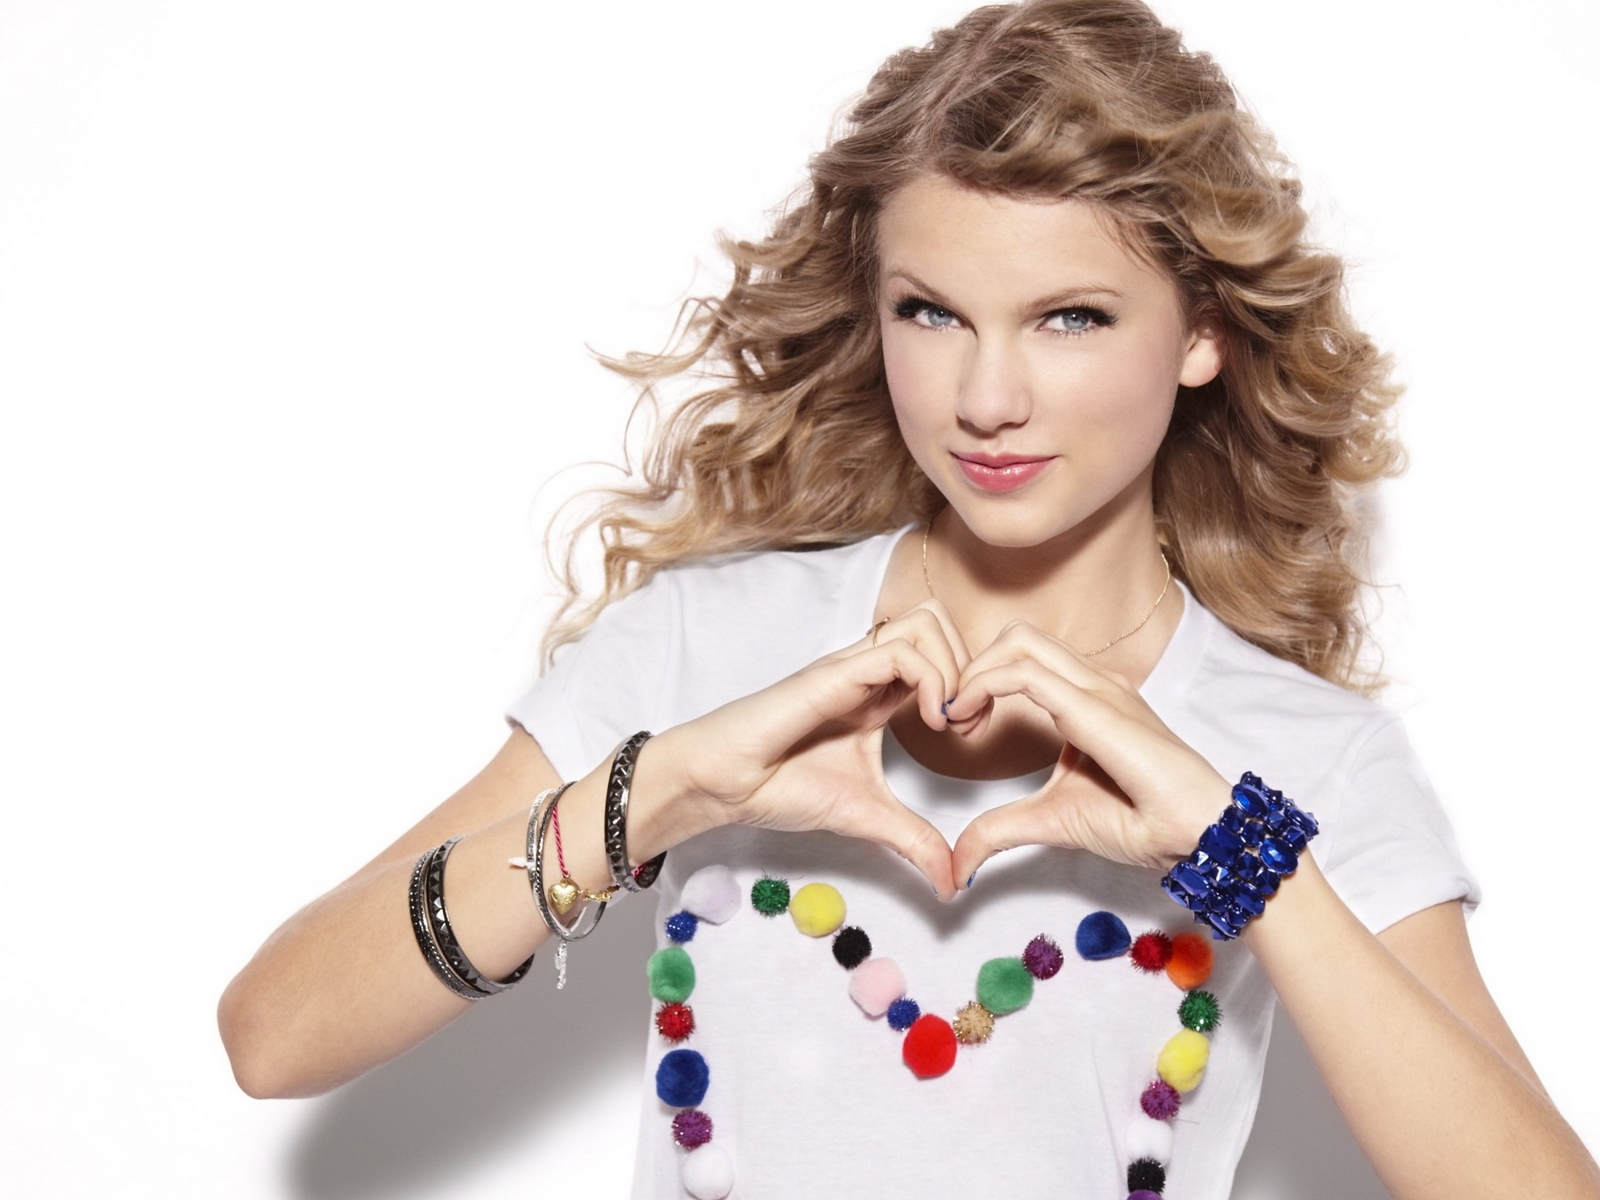 Taylor Swift Wallpaper Hd - Taylor Swift Heart Hands - HD Wallpaper 